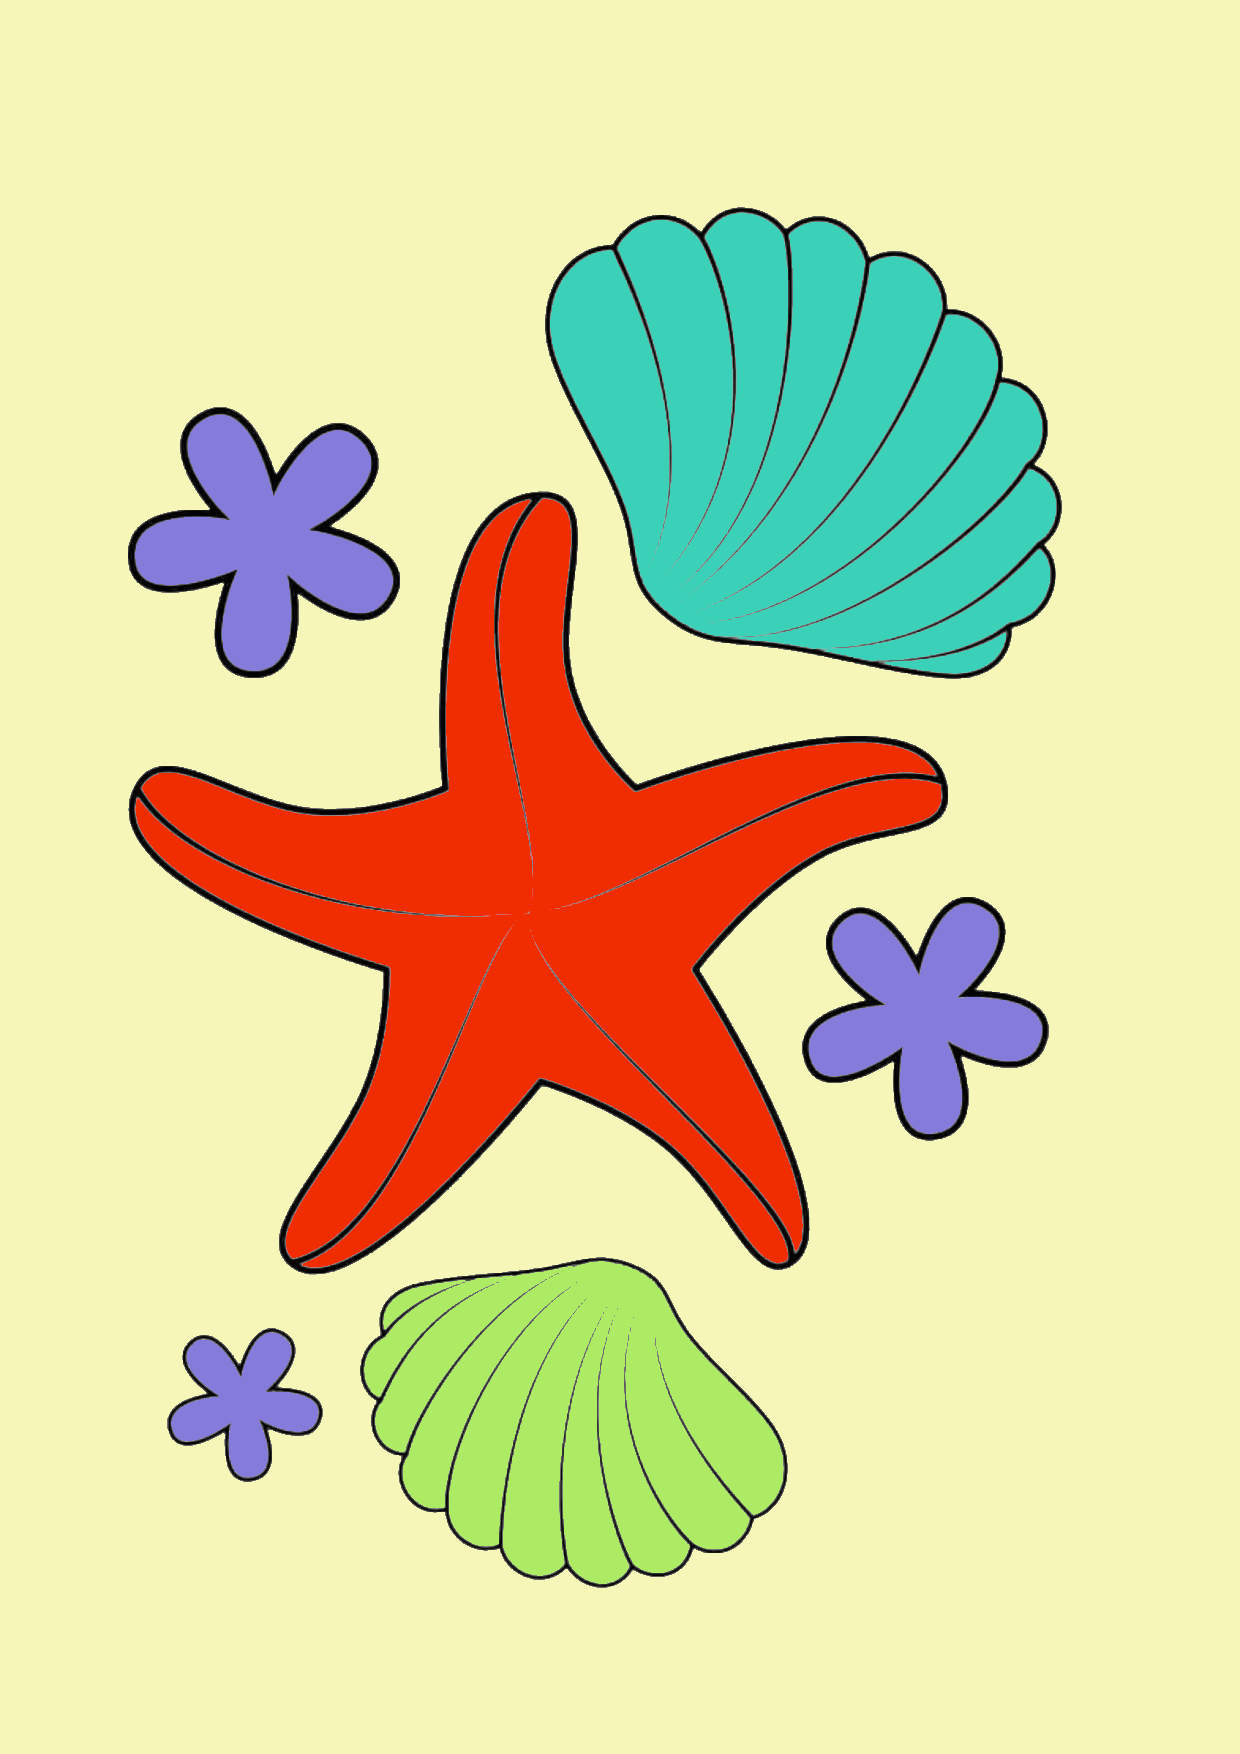 Vẽ vỏ sò miễn phí tiền bản Quyền Hoạ  con sao biển png tải về  Miễn phí  trong suốt Nautilla png Tải về